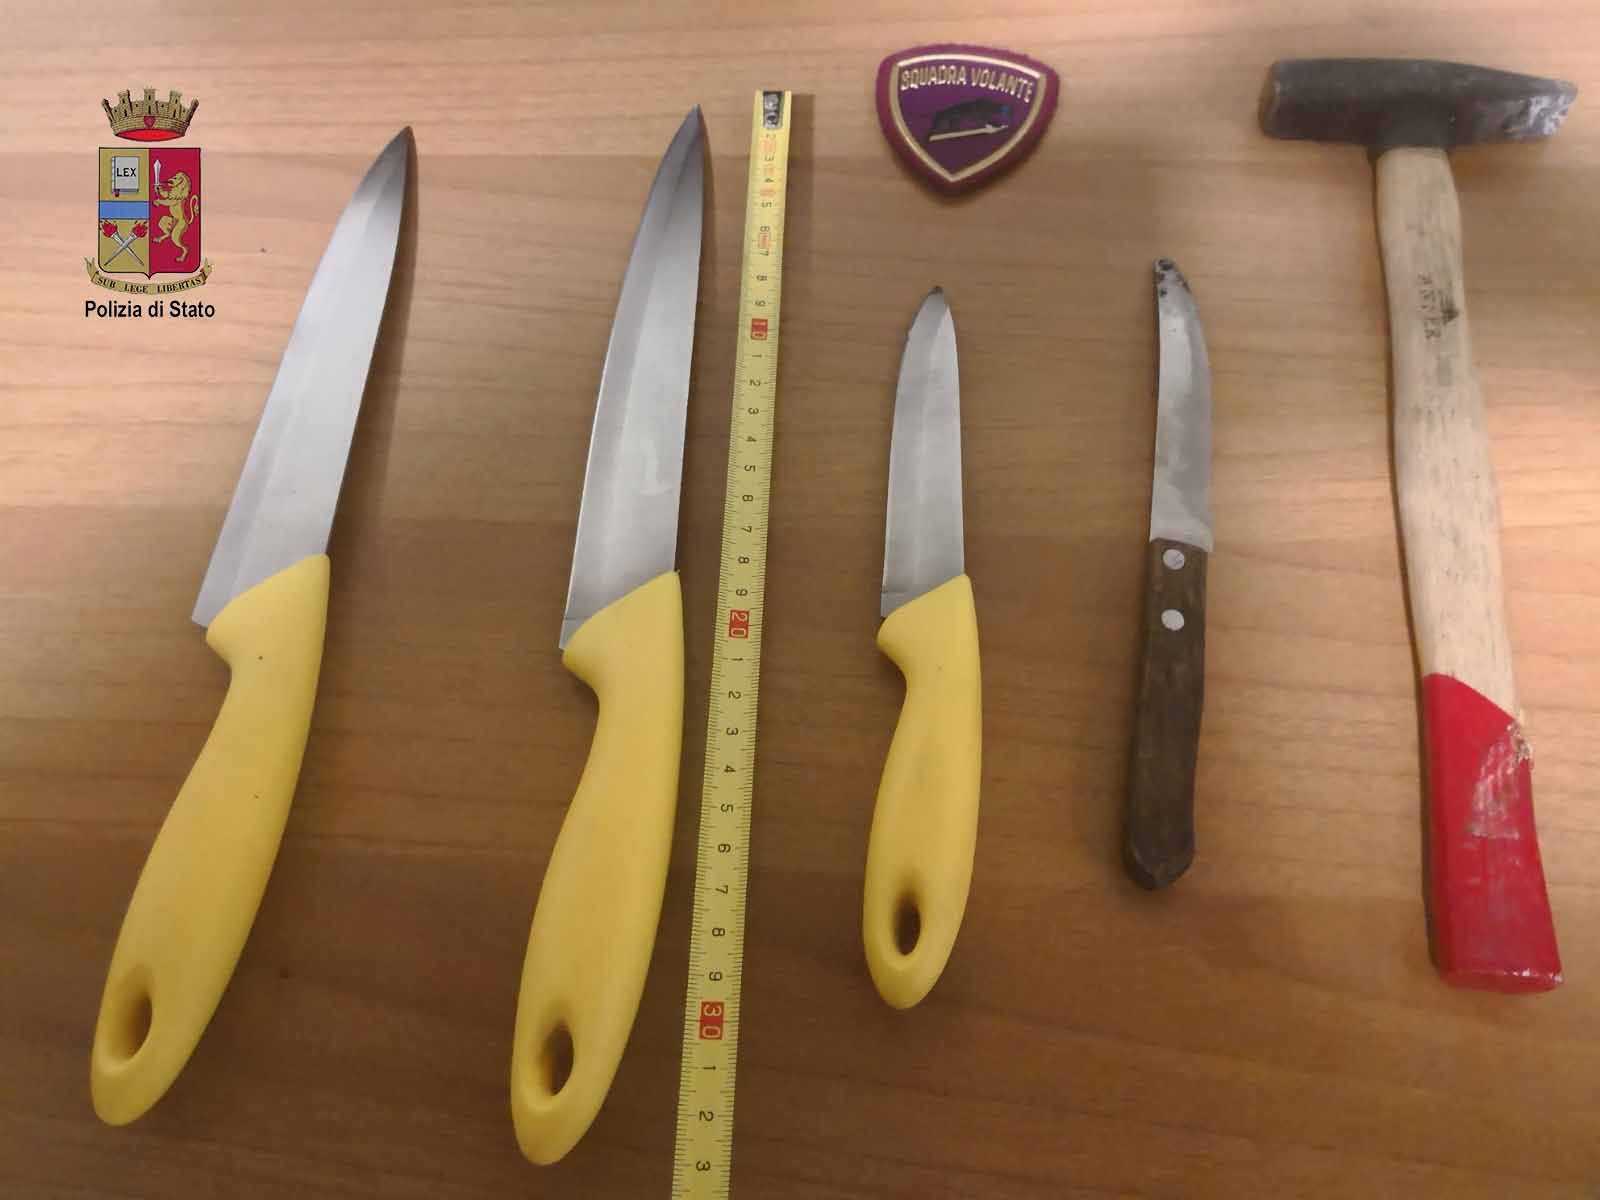 Foto di coltelli e martelli sequestrati a Marianna Letizia, 37enne messinese arrestata dalla Polizia